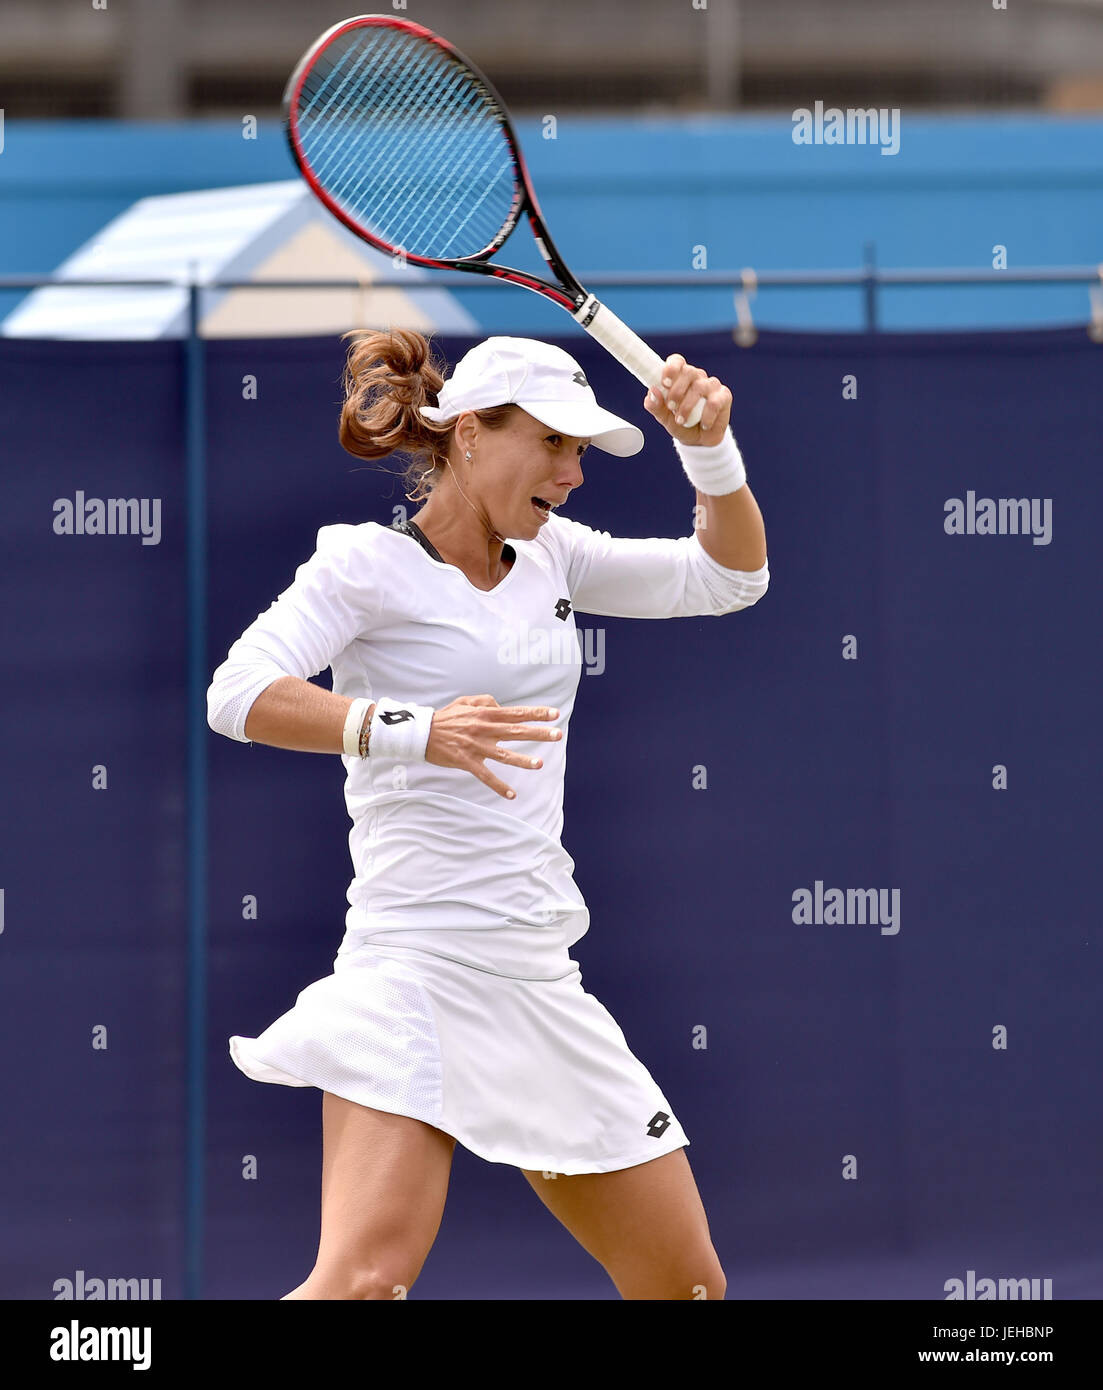 Varvara Lepchenko des USA en action contre Risa Ozaki du Japon au cours de l'Aegon tennis Eastbourne International tournament à Devonshire Park à Eastbourne East Sussex UK. 25 Juin 2017 Banque D'Images